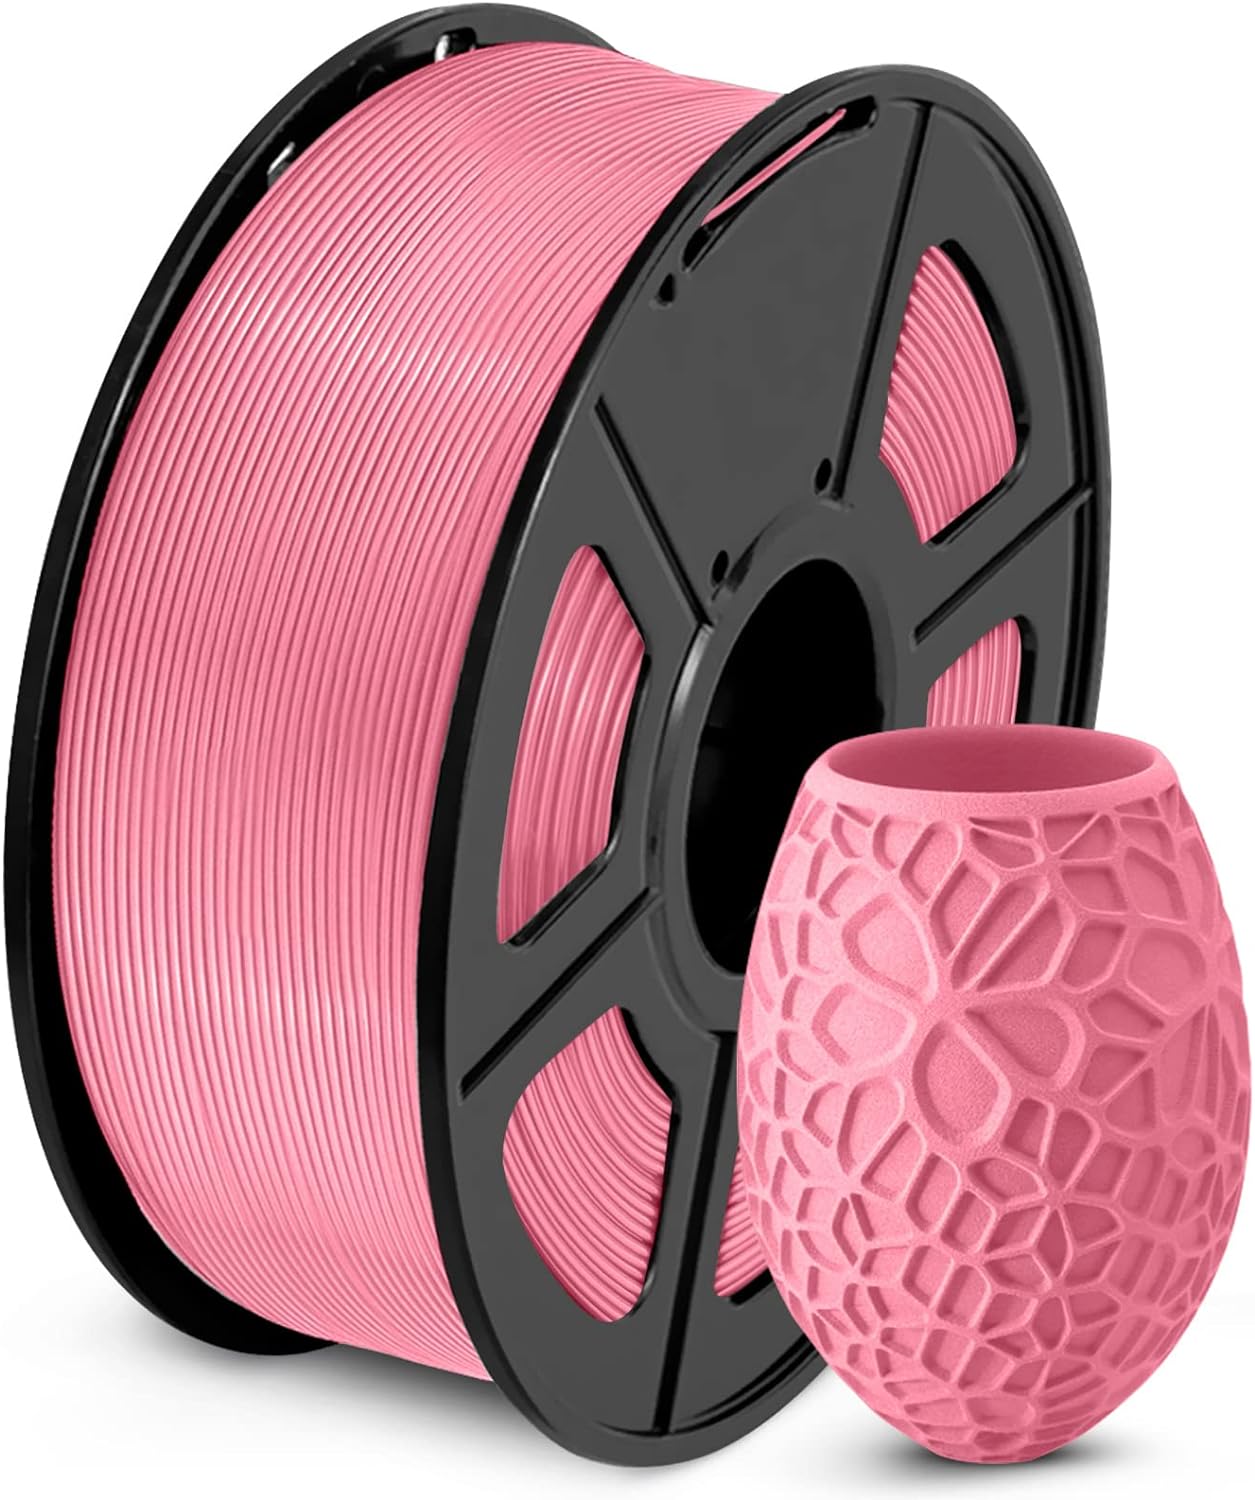 sunlu-pla-3d-printer-filament-pla-filament-175mm-neatly-wound-pla-3d-printing-filament-175mm-dimensional-accuracy-002-mm-3 SUNLU PLA 3D Printer Filament Review